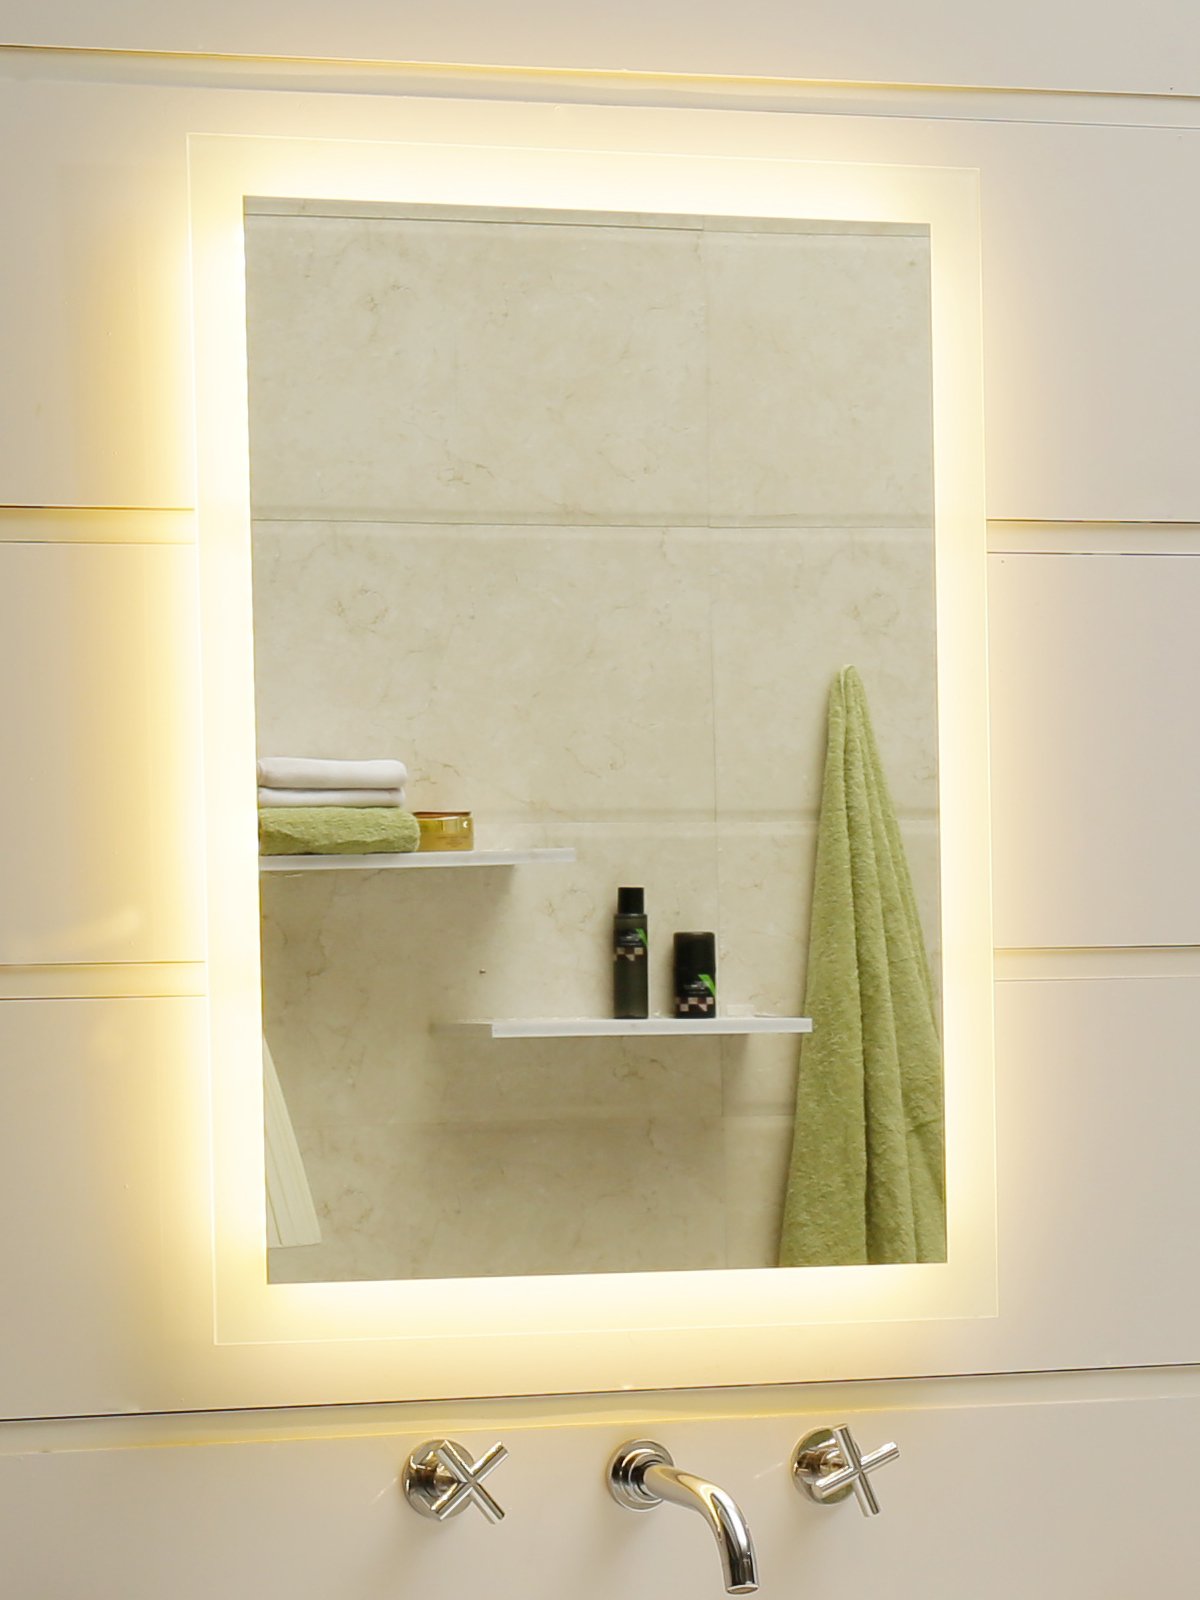 Dr. Fleischmann Badspiegel LED Spiegel GS084N mit Beleuchtung durch satinierte Lichtflächen Badezimmerspiegel (50 x 70 cm, warmweiß)